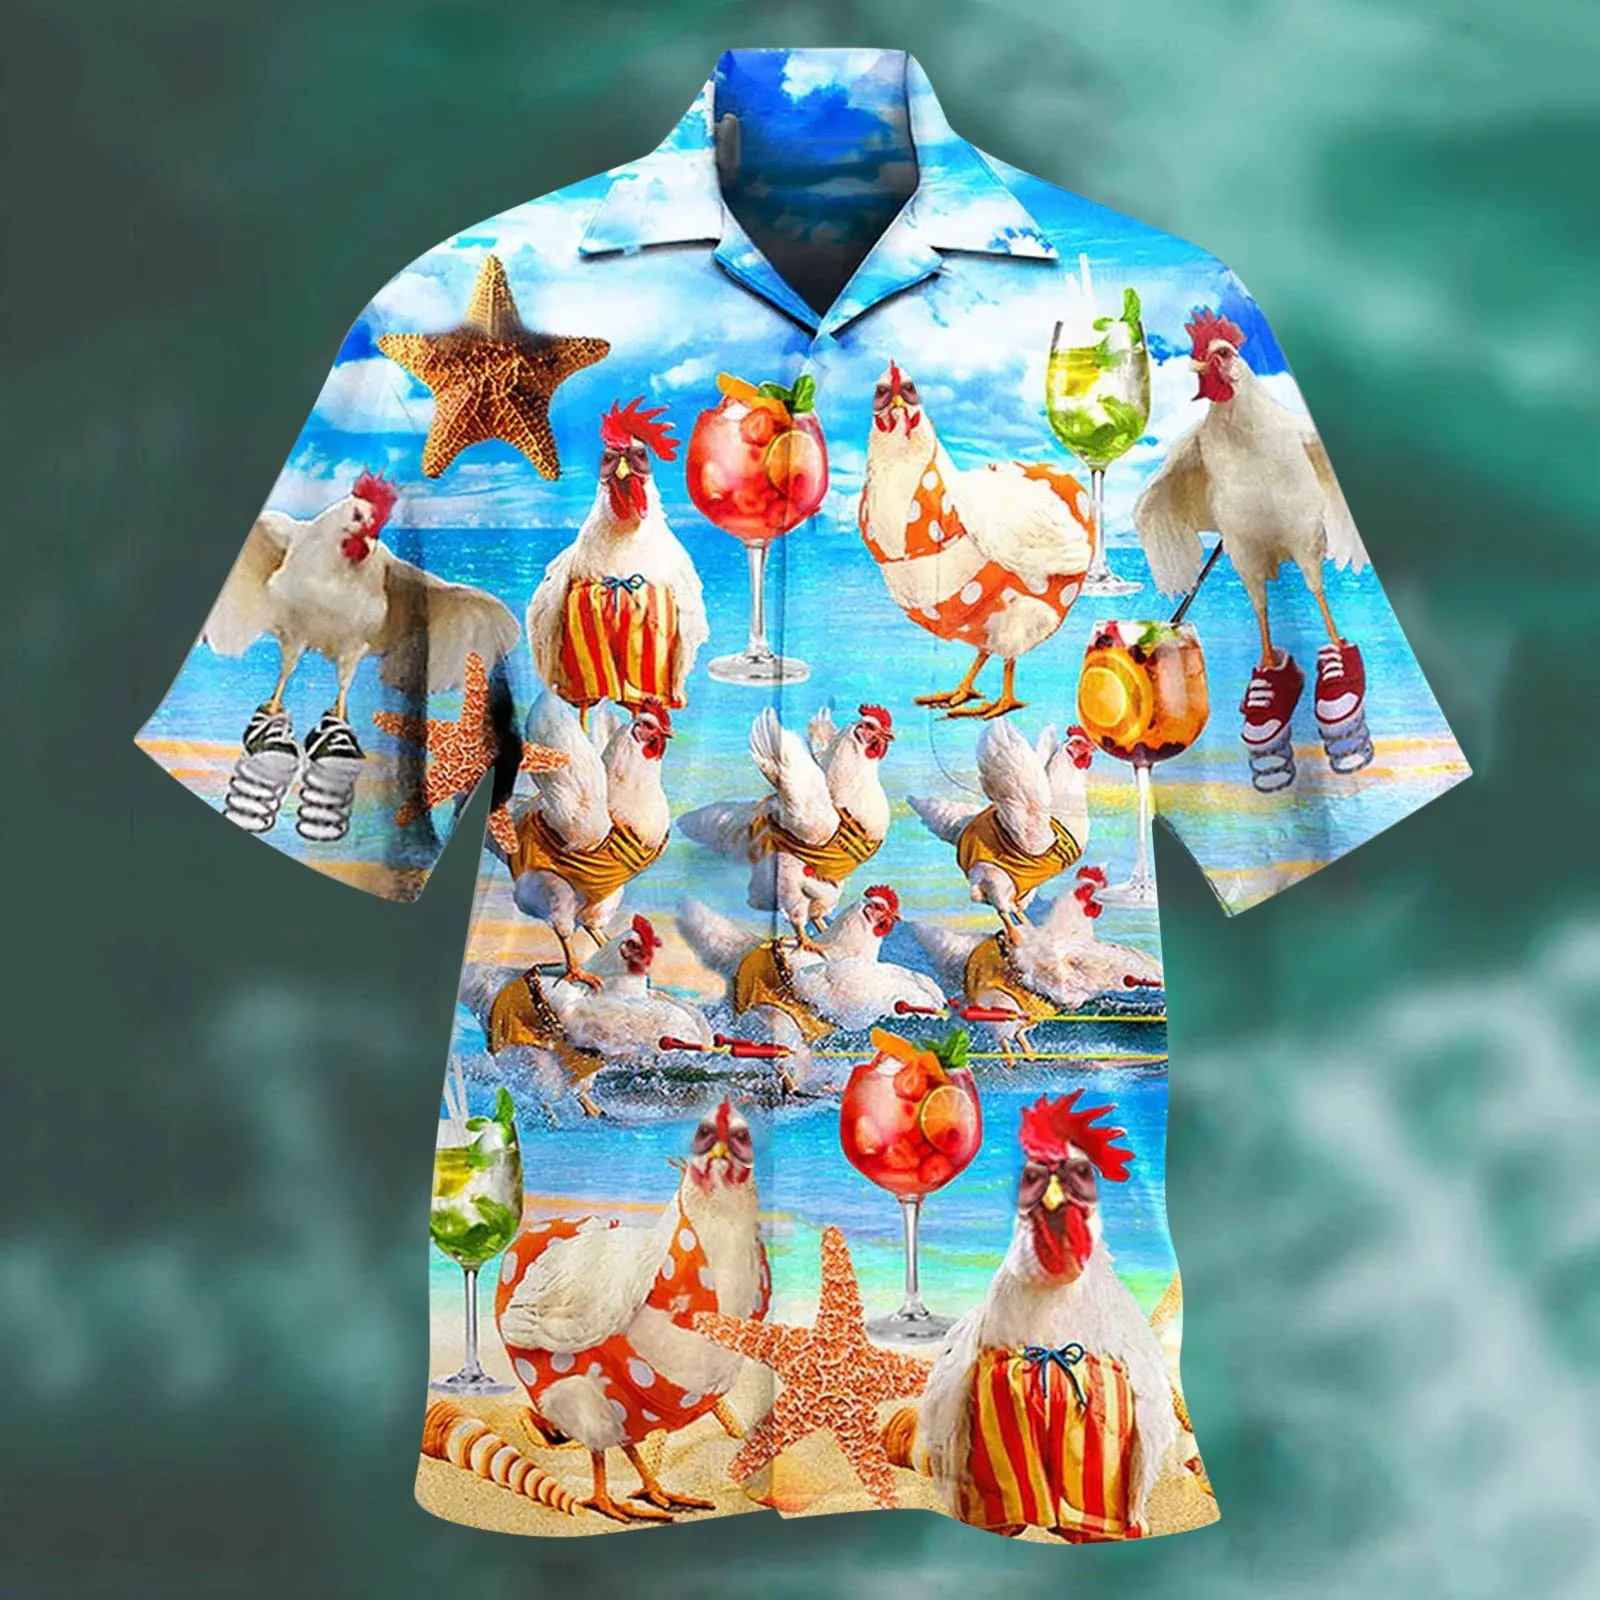 

Рубашка с принтом животных, Гавайские забавные рубашки для мужчин, мультяшный воротник с лацканами и коротким рукавом, мужская рубашка, рубашки, блузы, топы для отпуска, Новинка